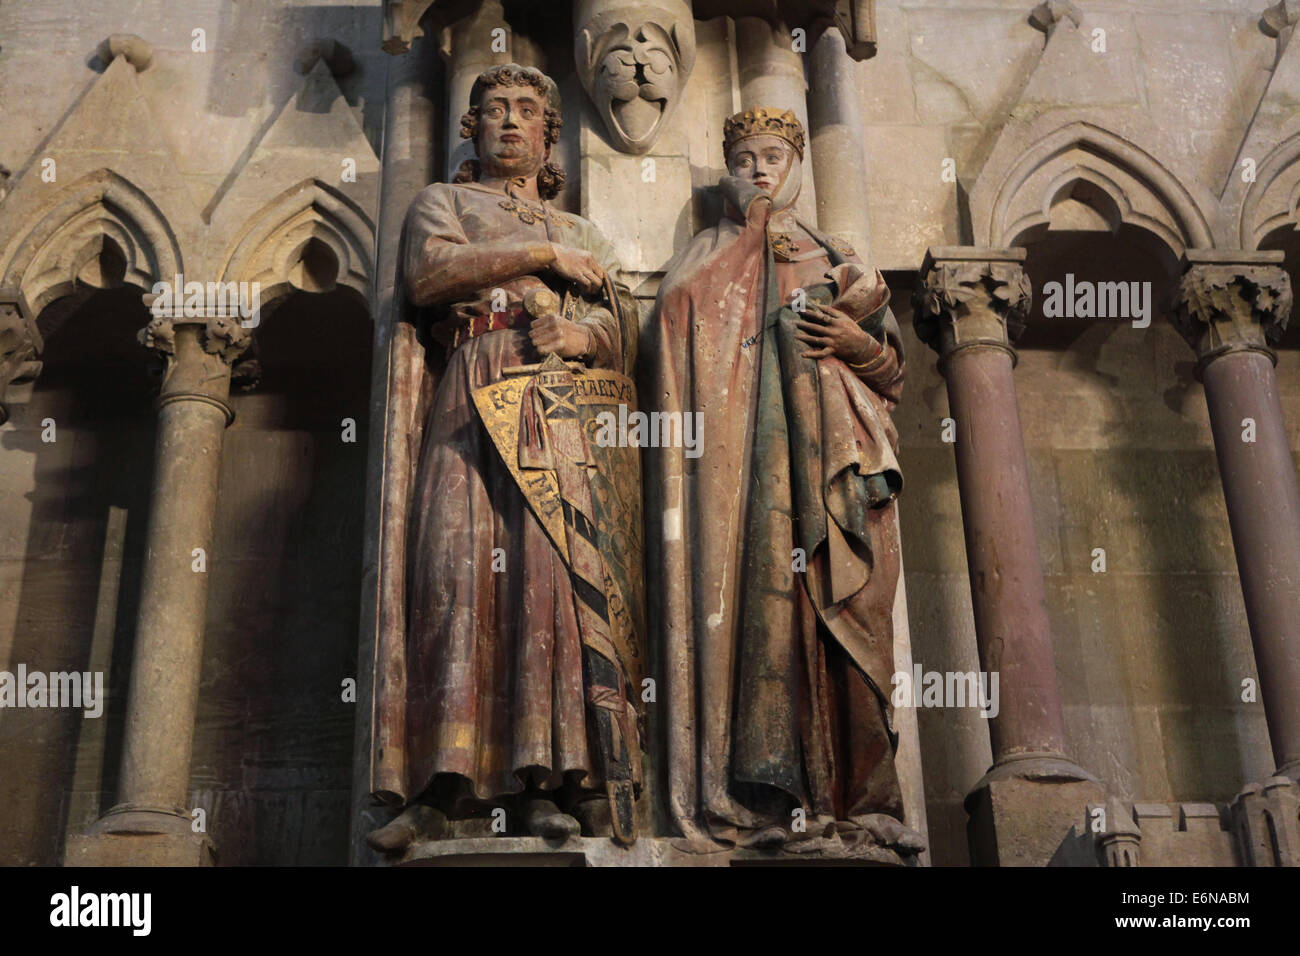 Gotischen Statuen des Markgrafen Eckard II. und seiner Frau Uta im Naumburger Dom in Naumburg, Sachsen-Anhalt, Deutschland. Stockfoto